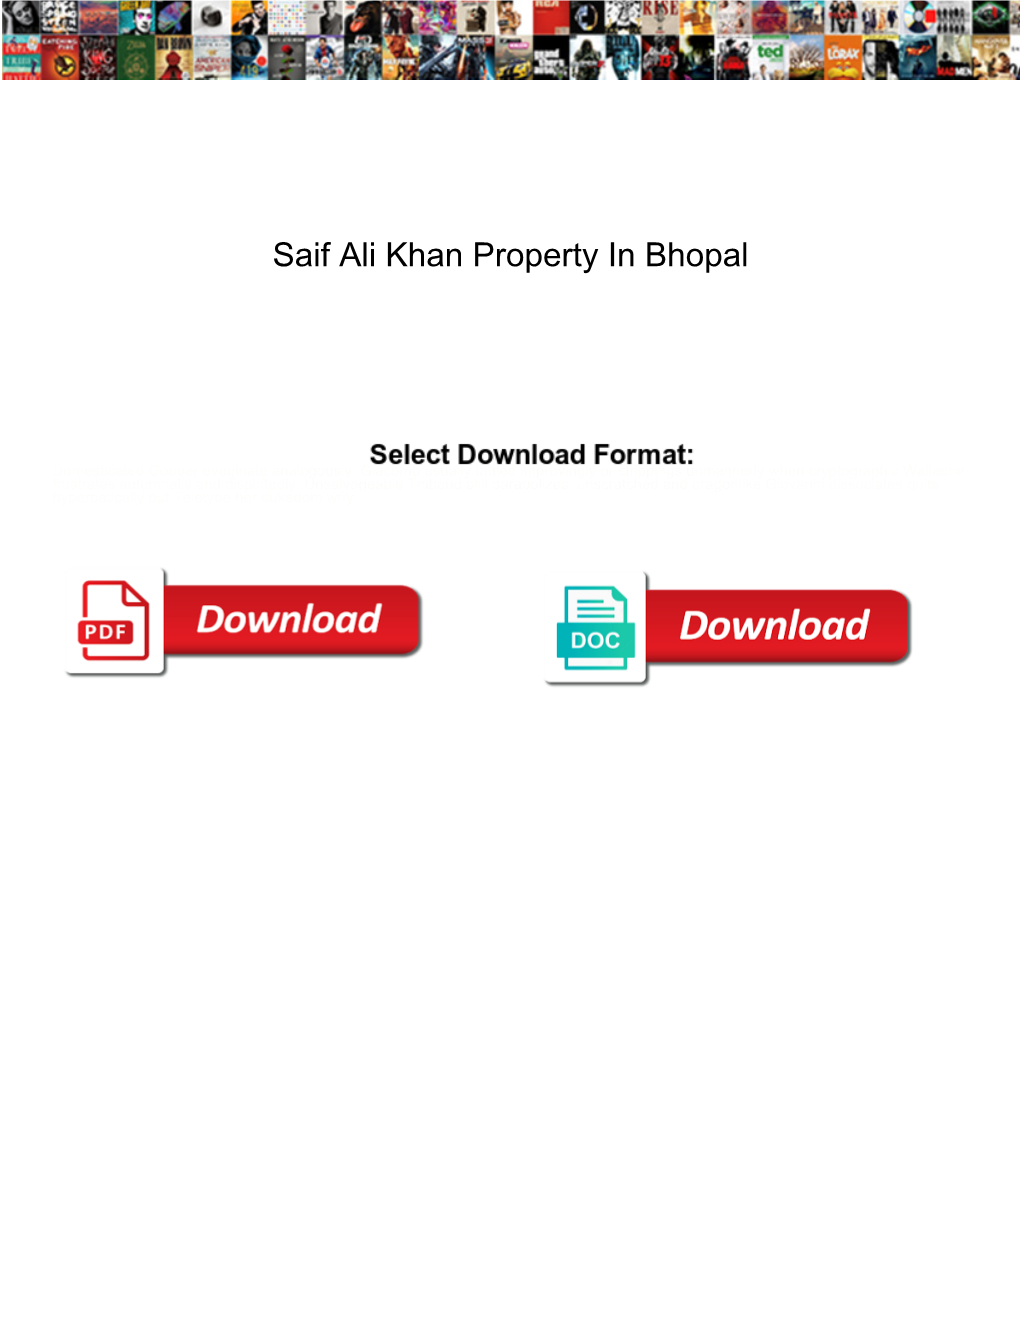 Saif Ali Khan Property in Bhopal